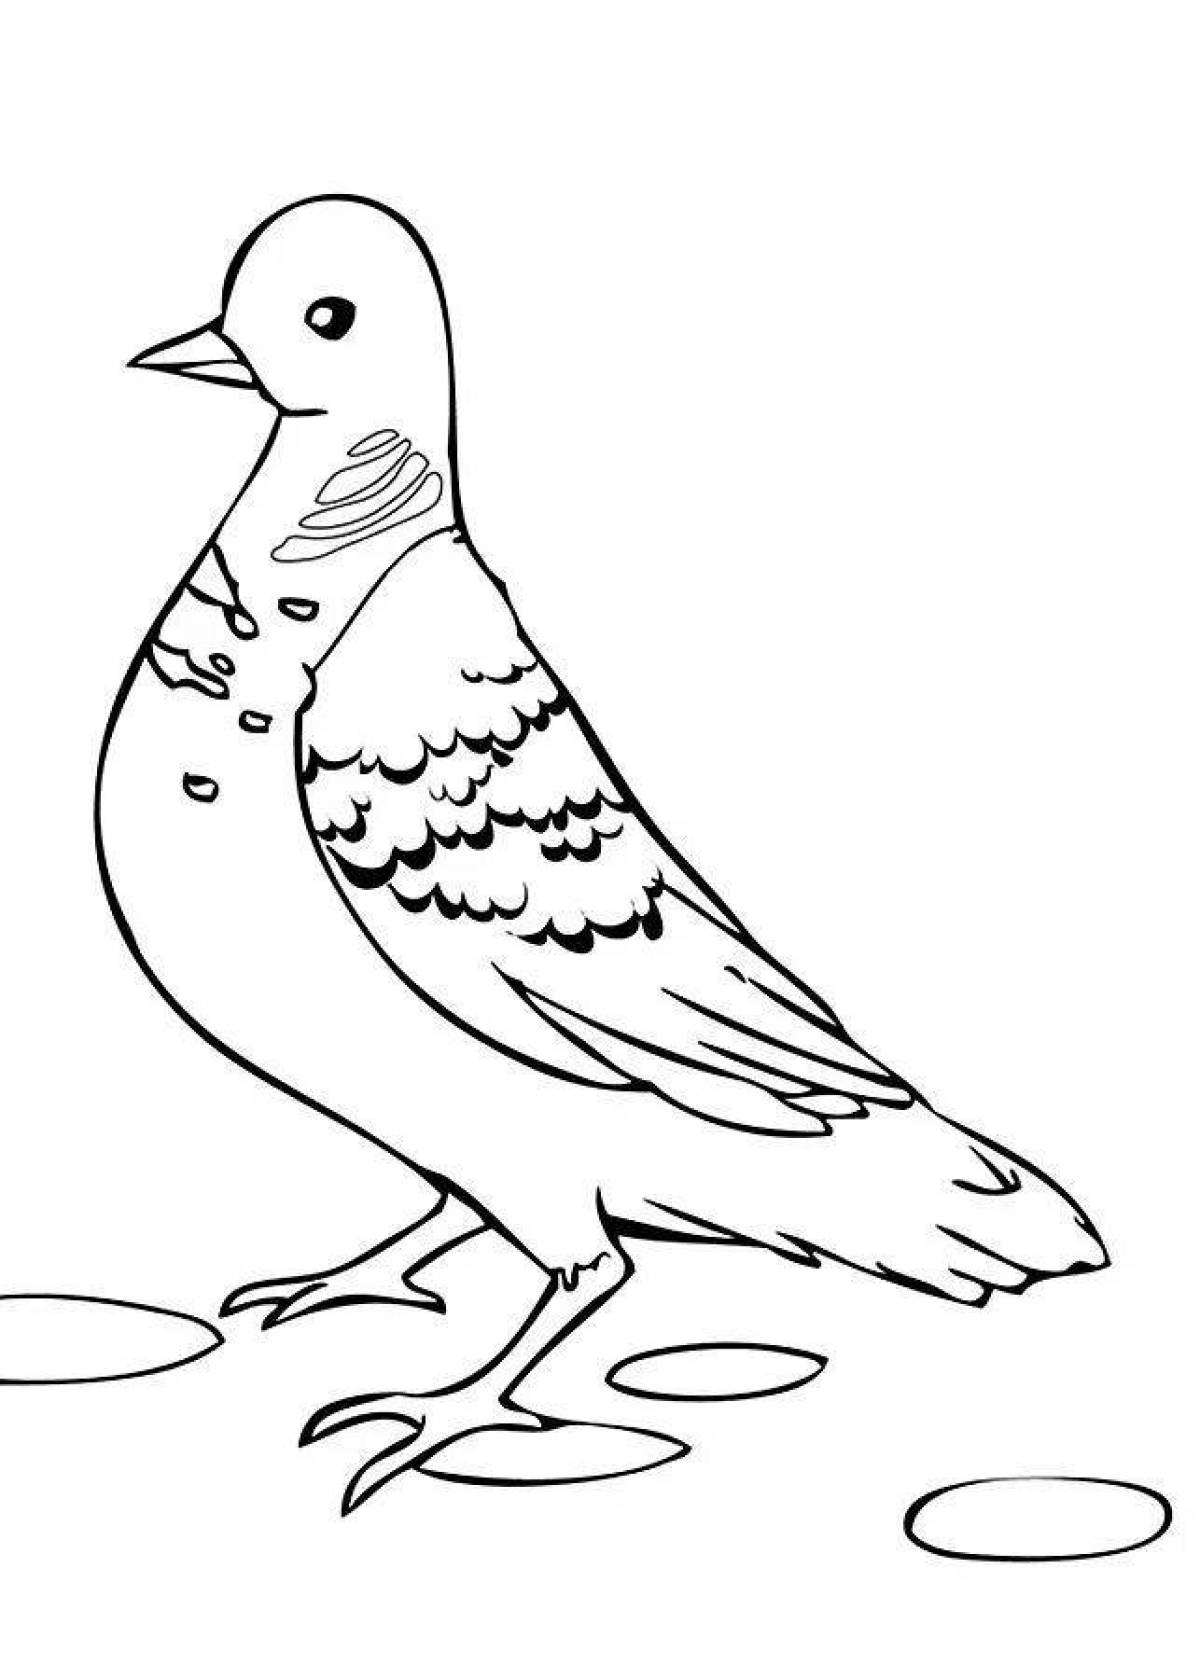 Serene dove coloring book